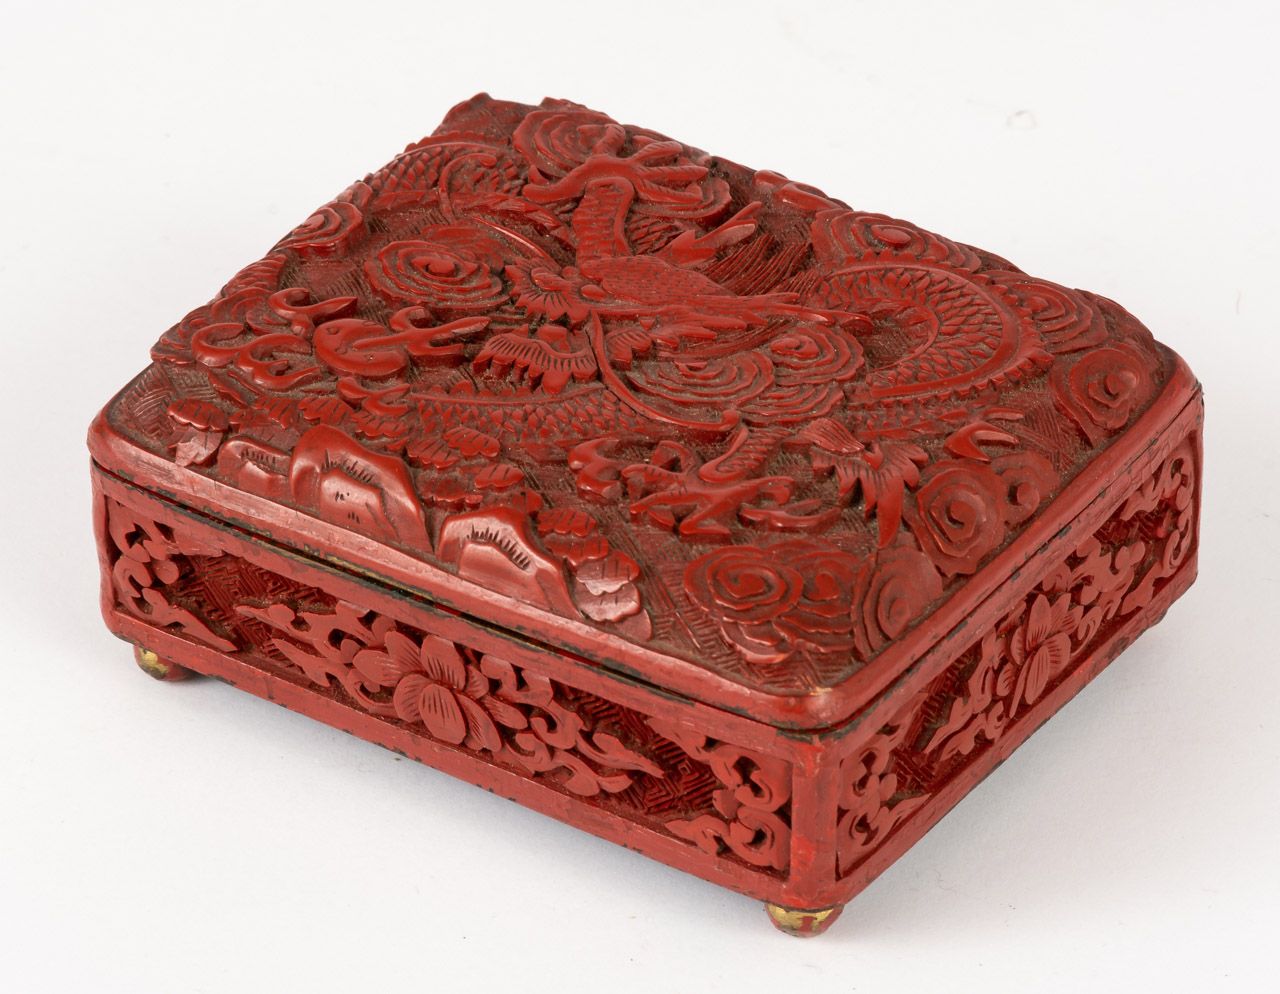 ROTE SCHNITZLACKDOSE Cina, lacca, legno, intagliato, probabilmente XIX secolo.

&hellip;